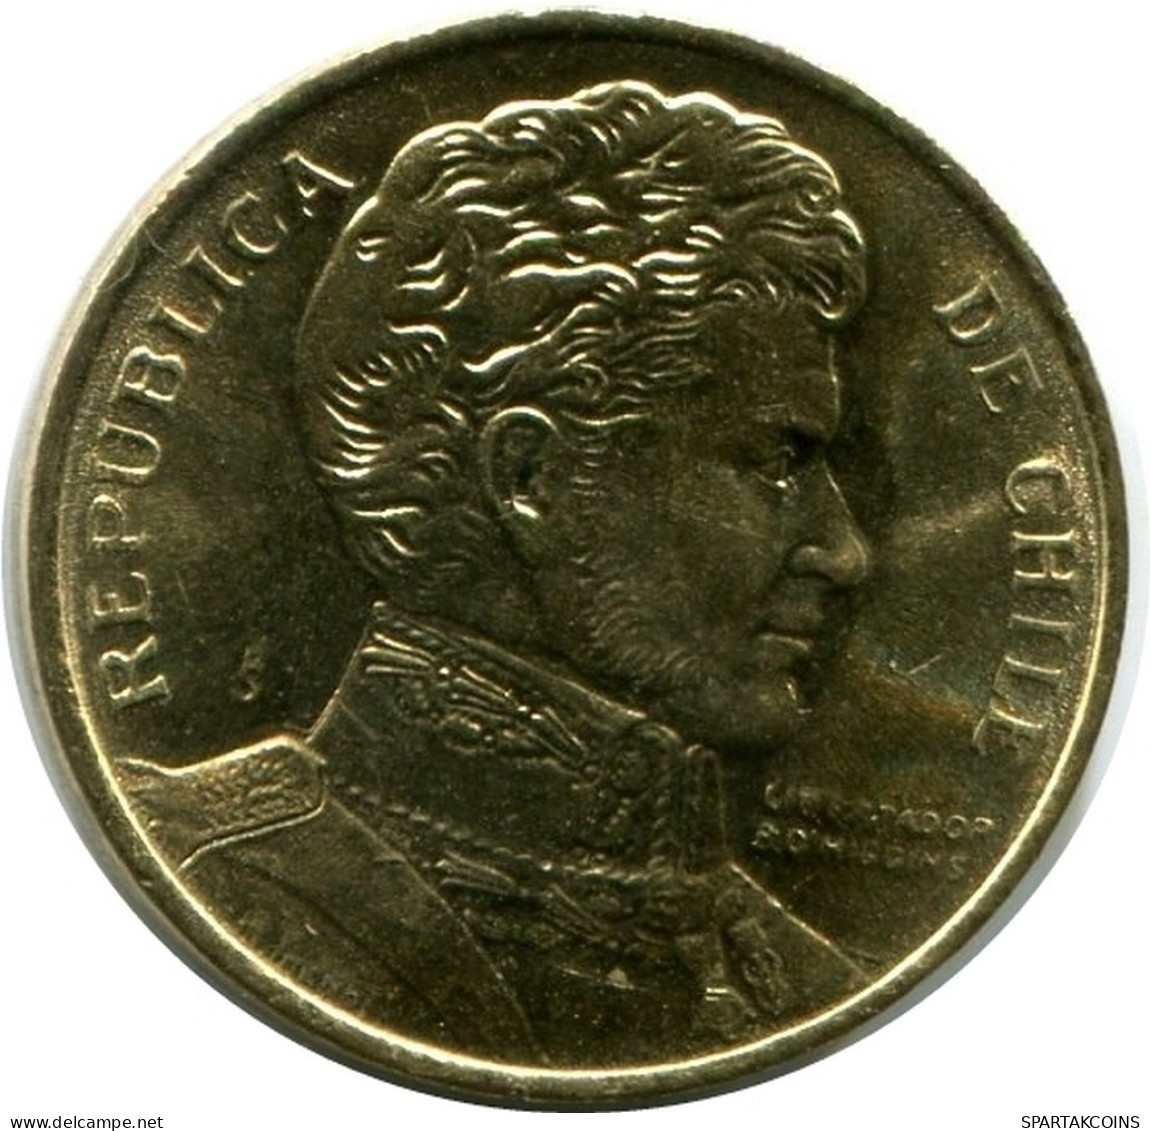 1 PESO 1990 CHILE UNC Coin #M10058.U.A - Chile